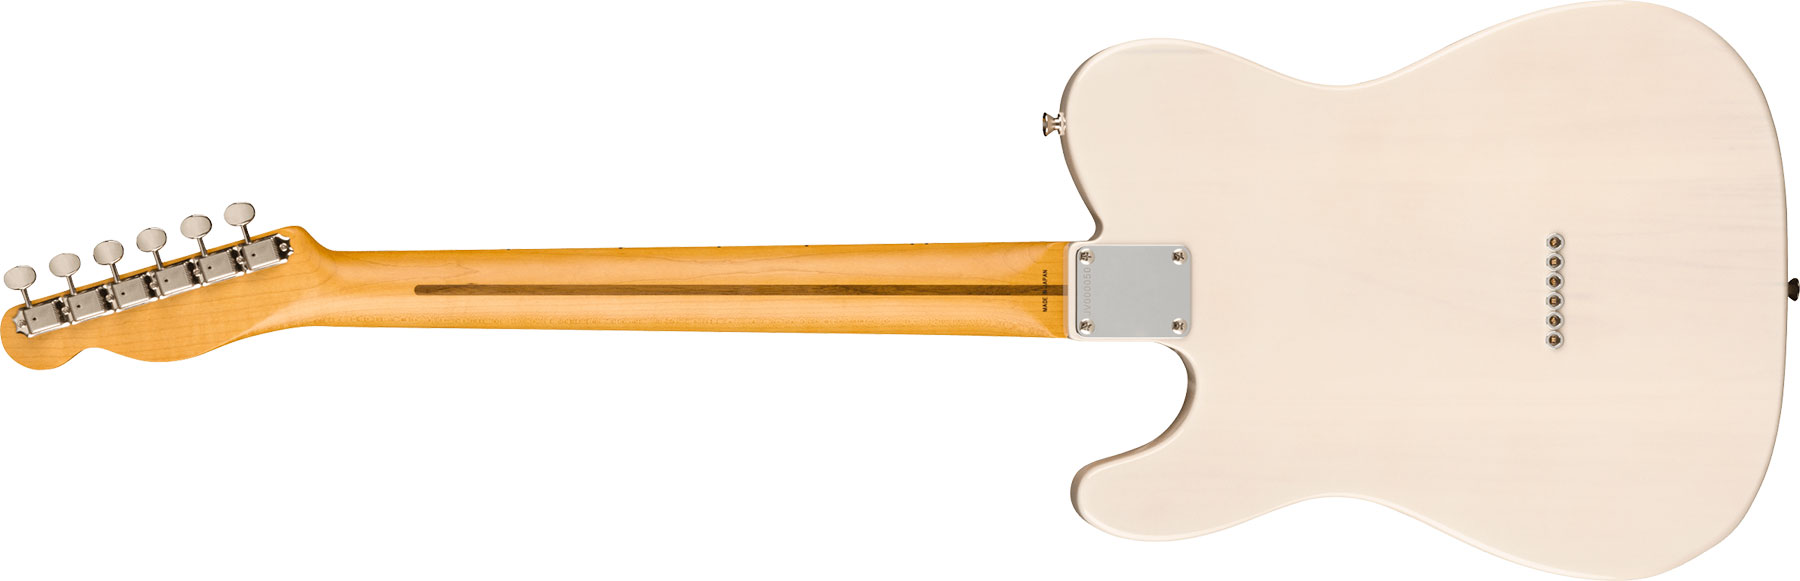 Fender Tele '50s Jv Modified Jap 2s Ht Mn - White Blonde - Guitarra eléctrica con forma de tel - Variation 1